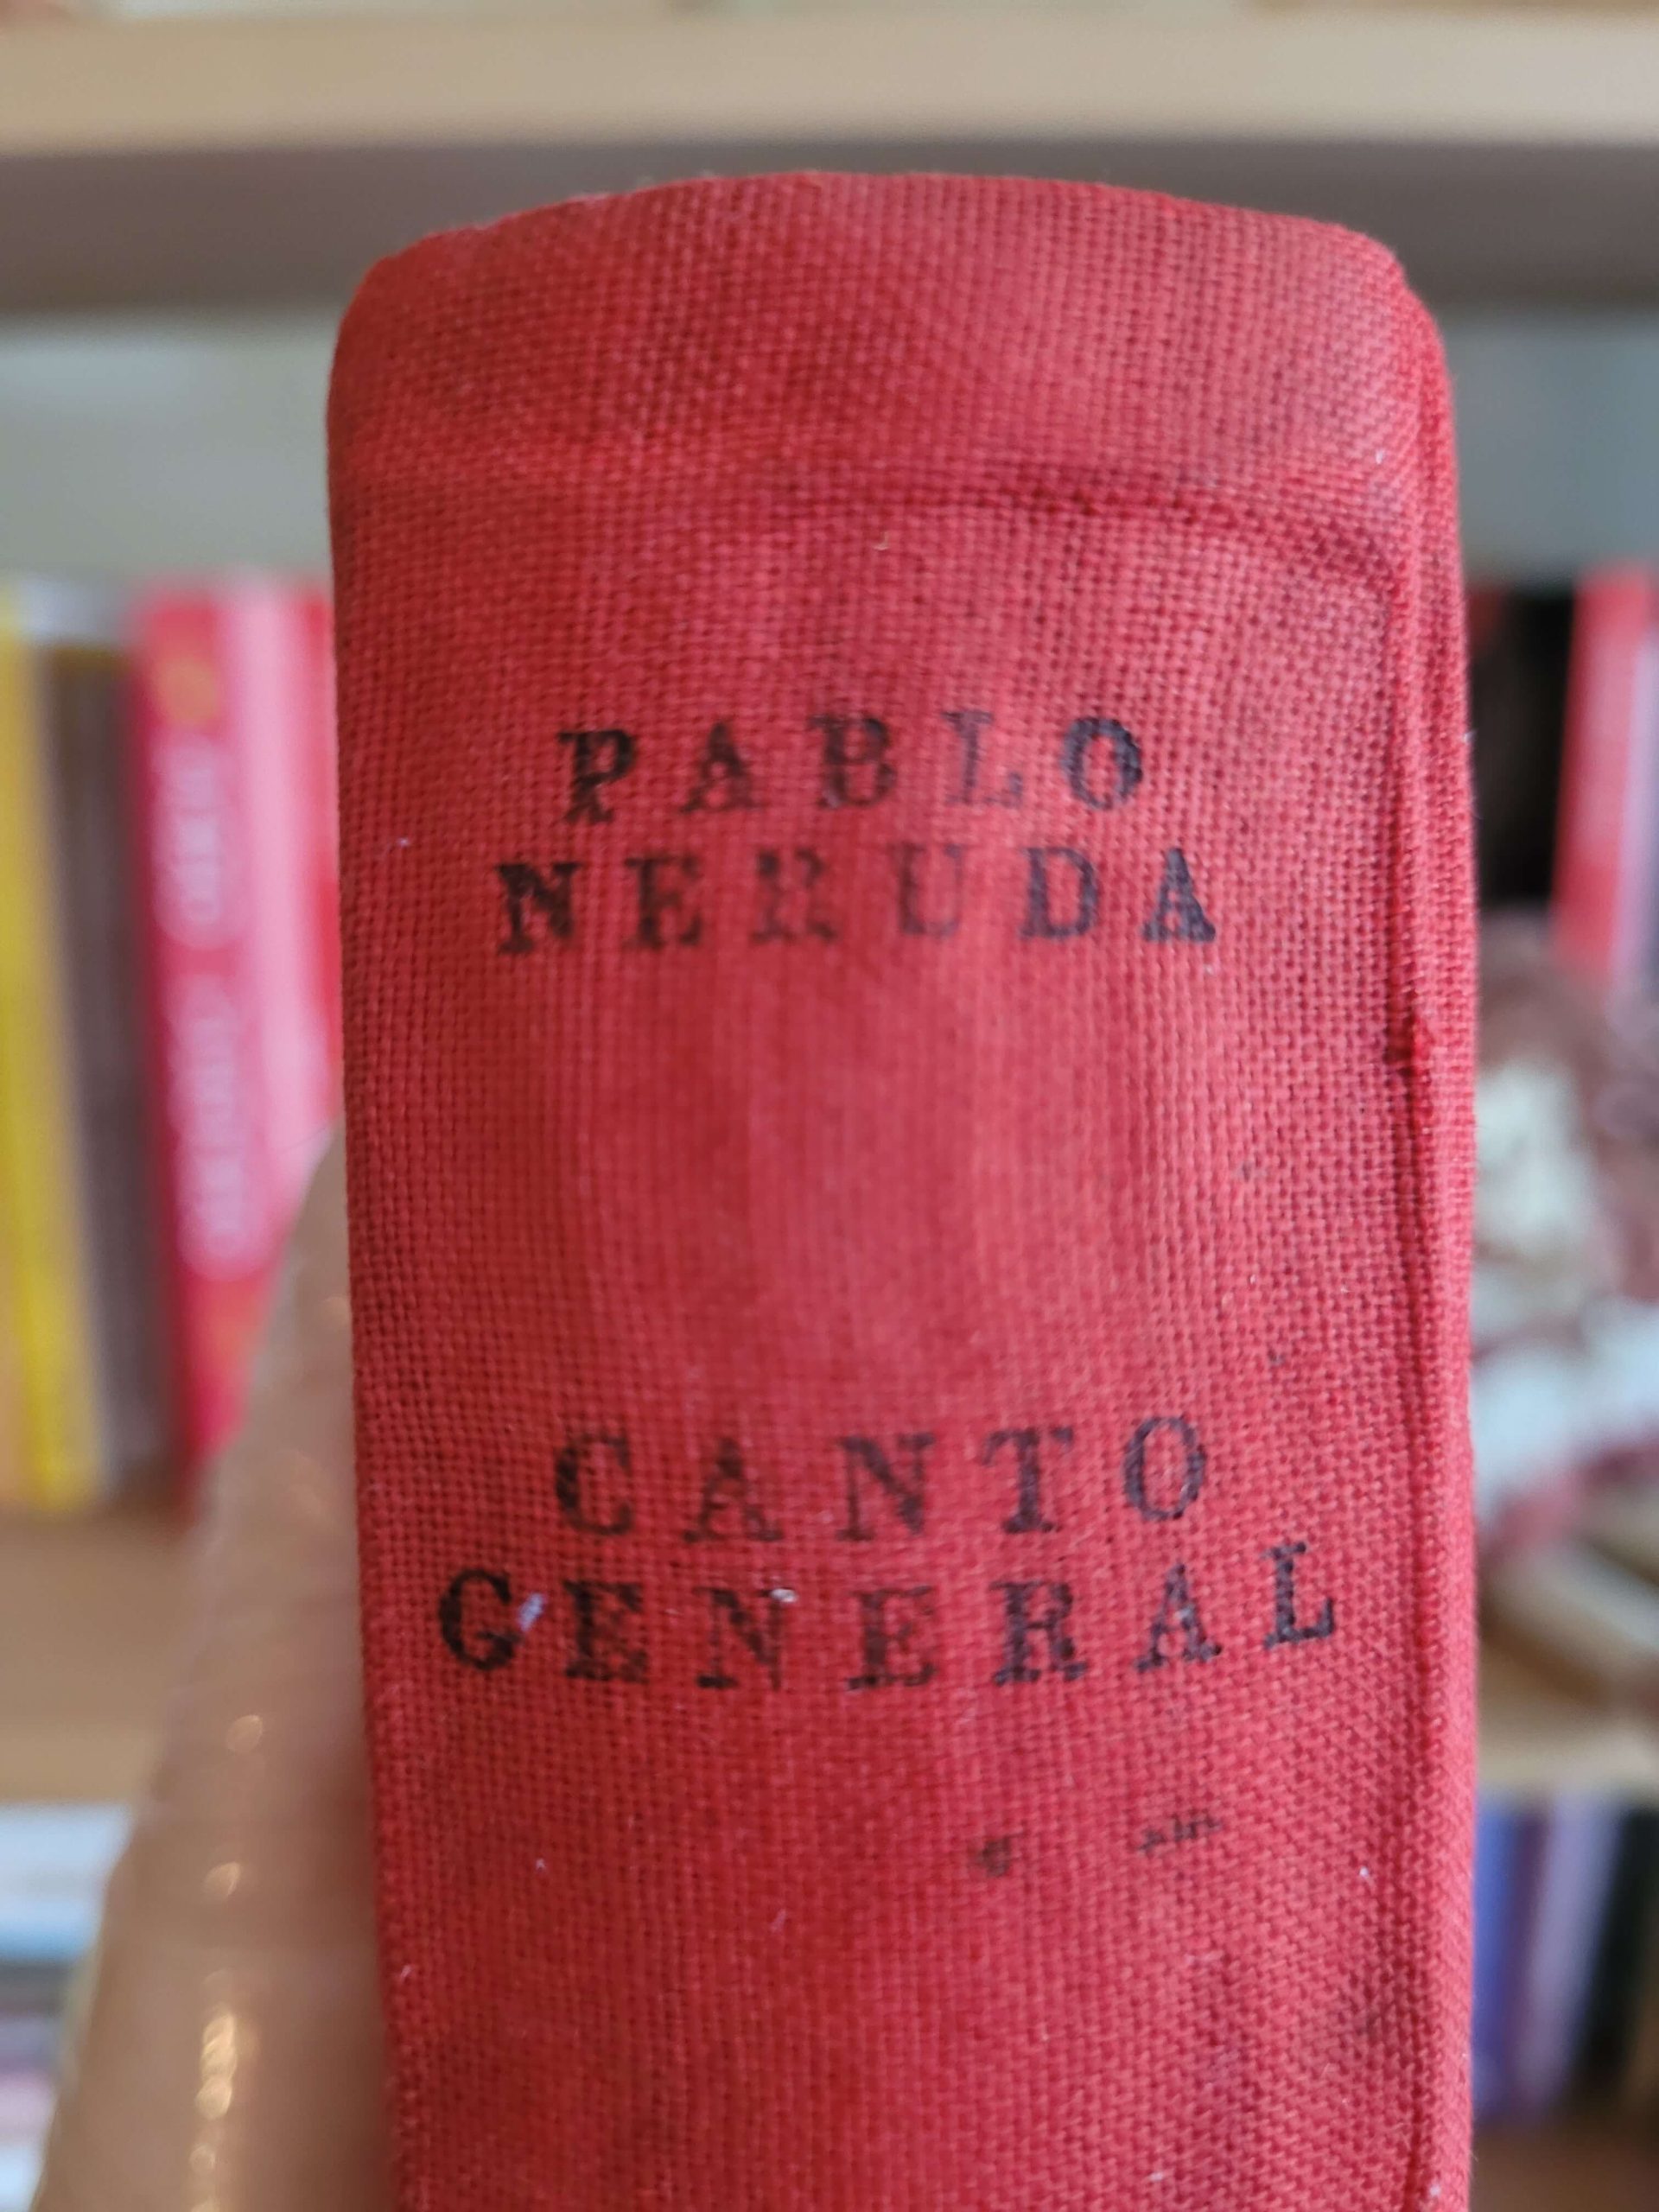 (1952) Canto general (Pablo Neruda)